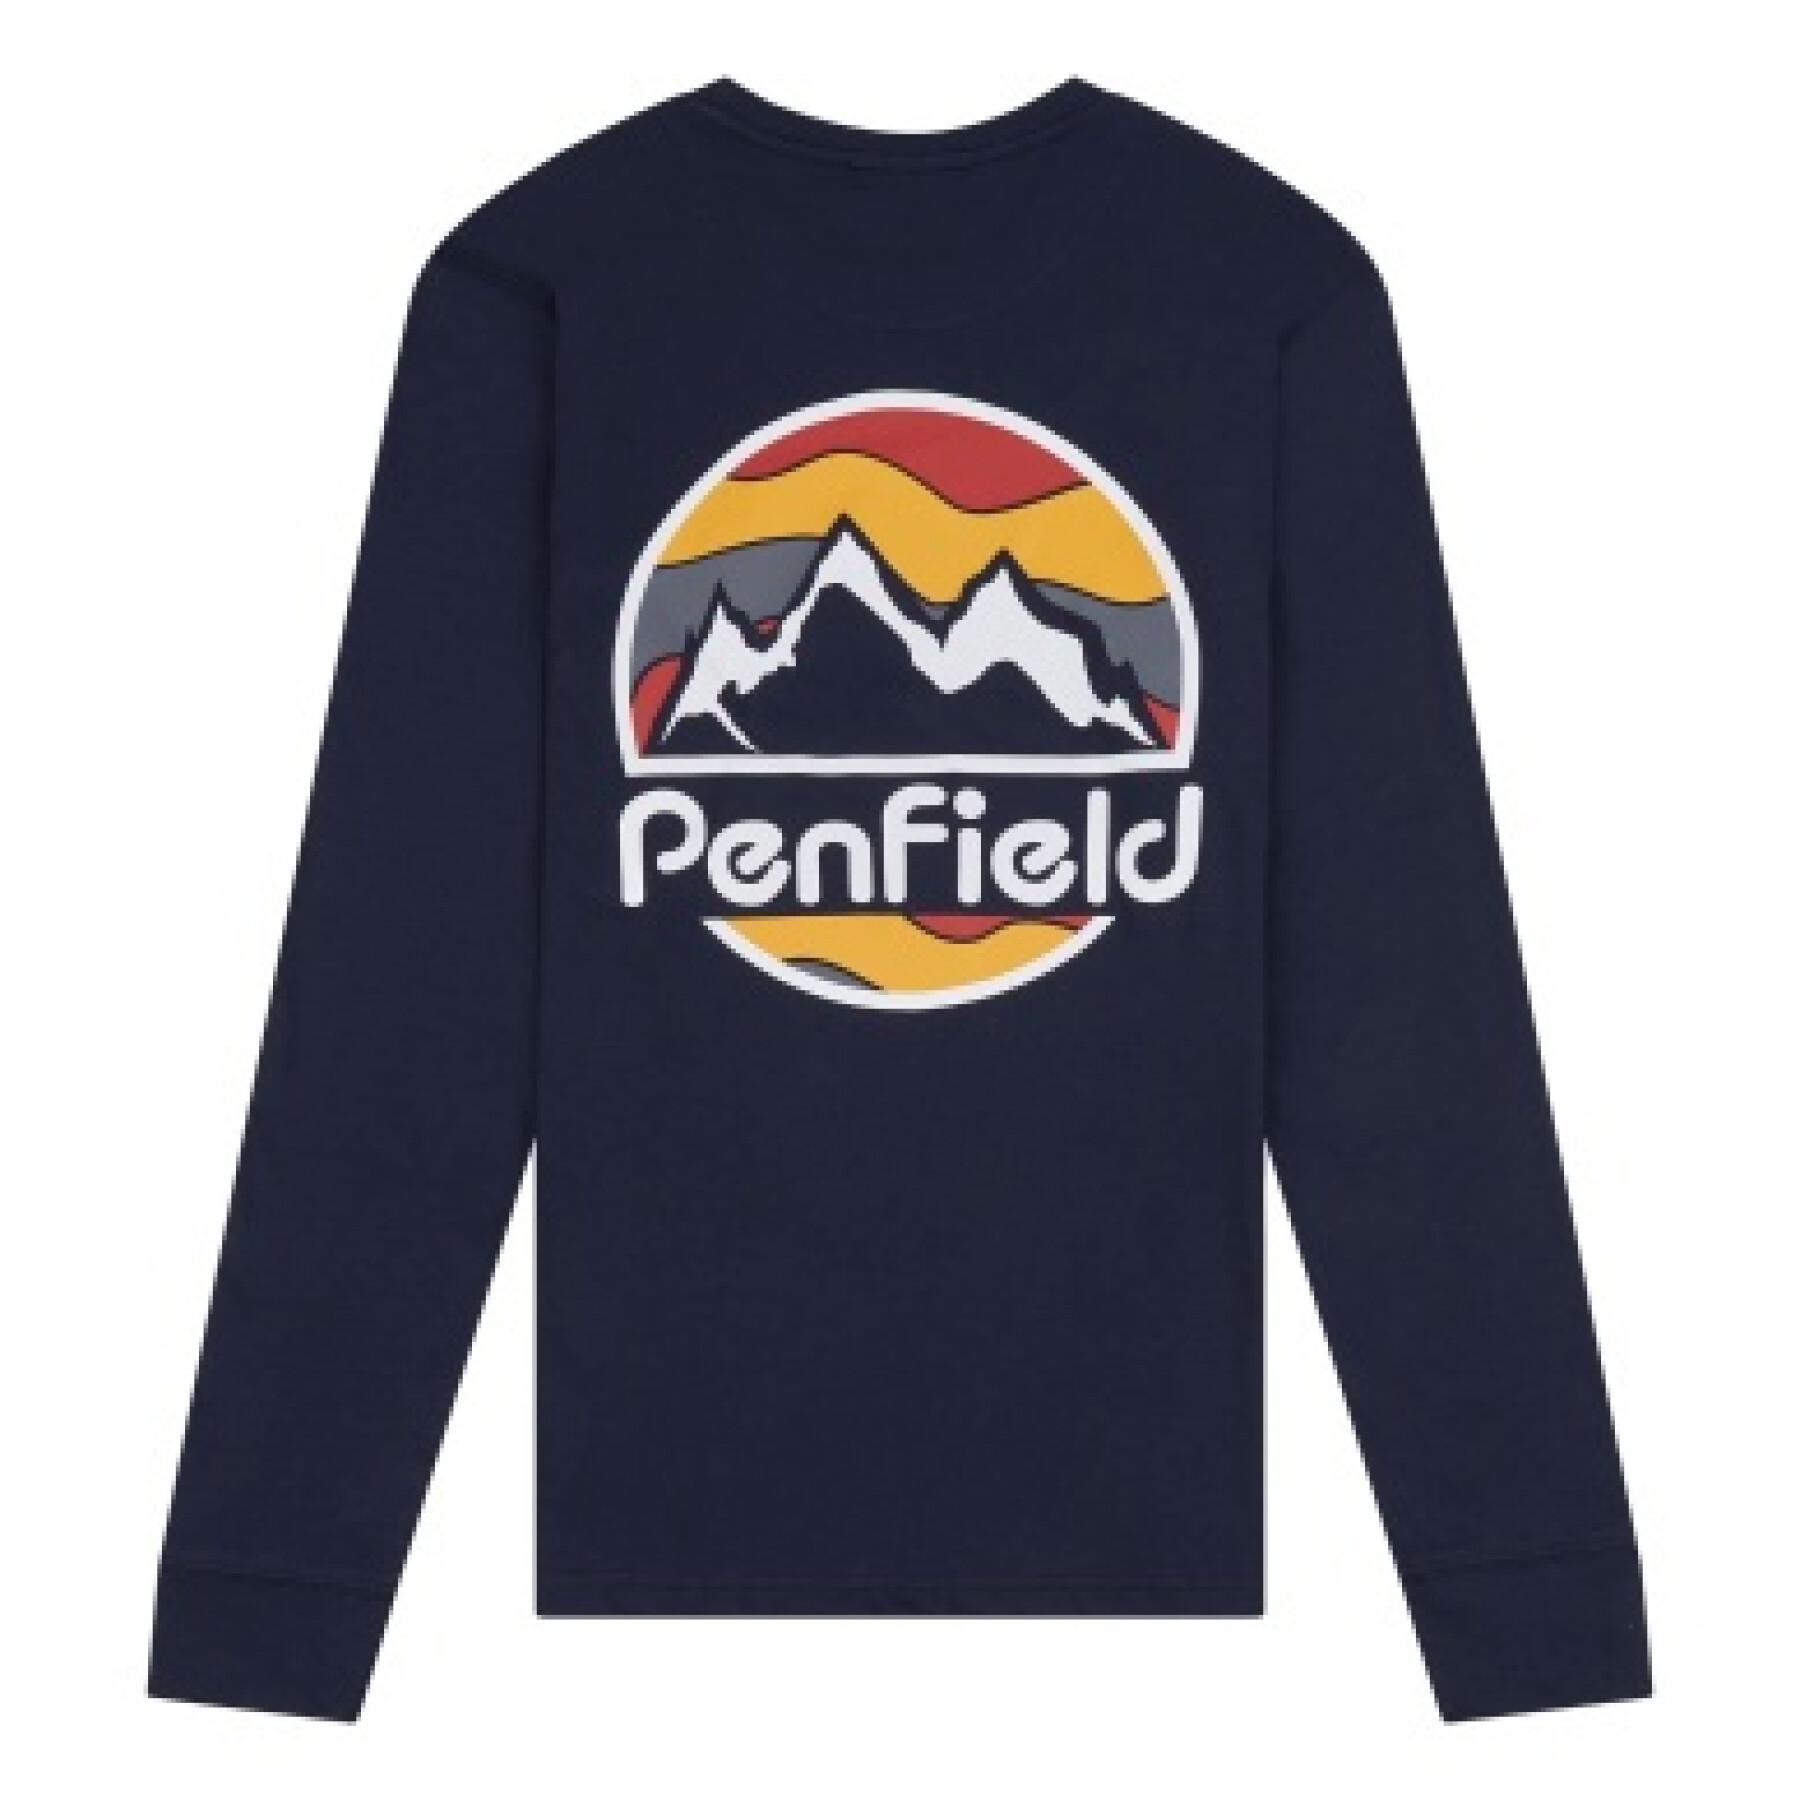 Camiseta mangas largas Penfield back circular